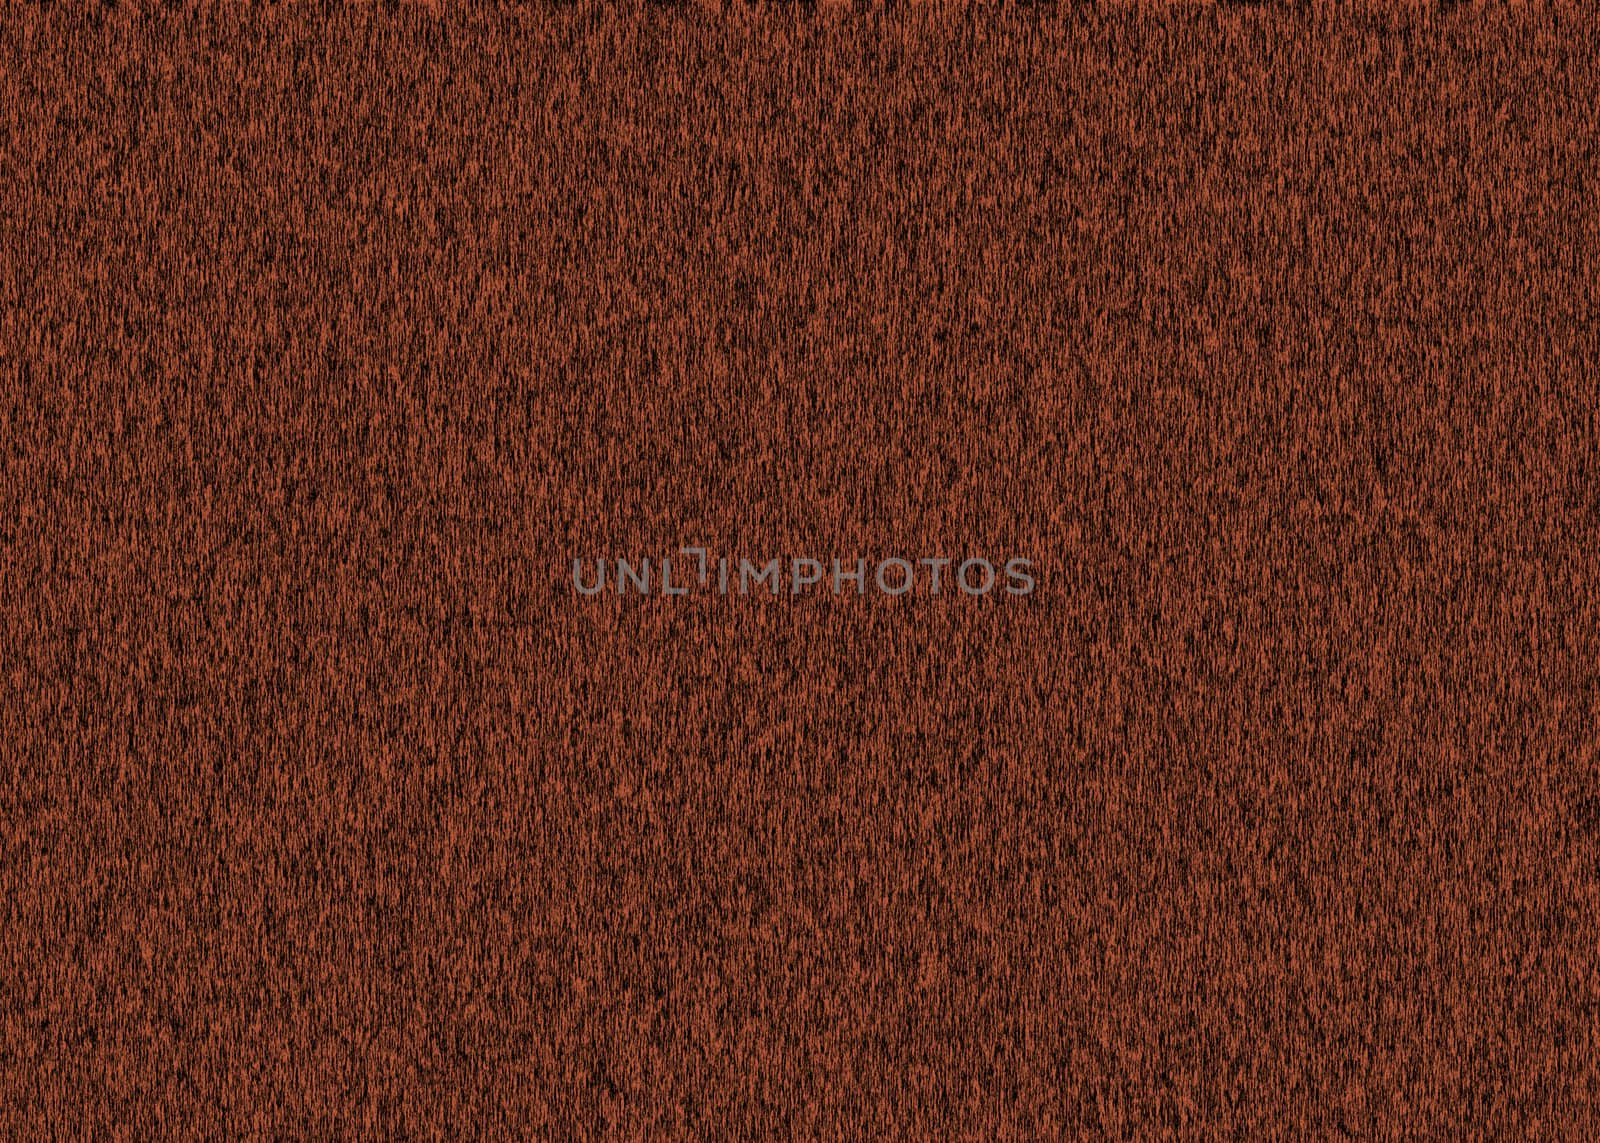 Dark brown wooden furniture surface. Old textured background.